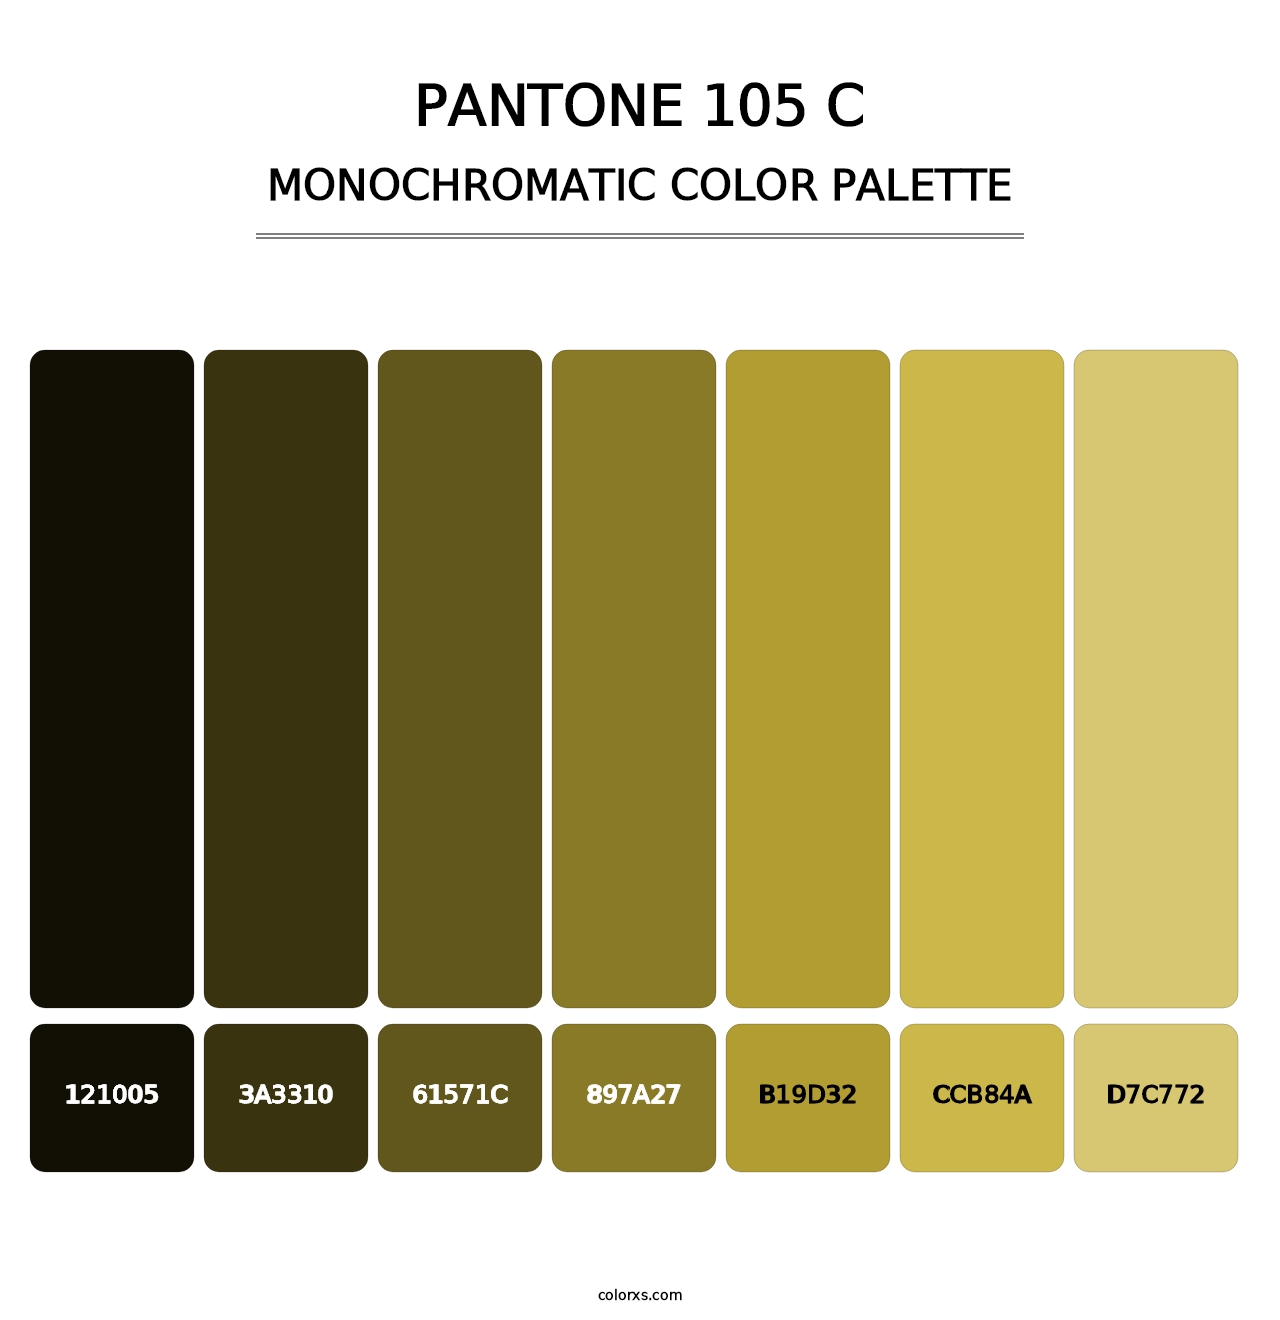 PANTONE 105 C - Monochromatic Color Palette